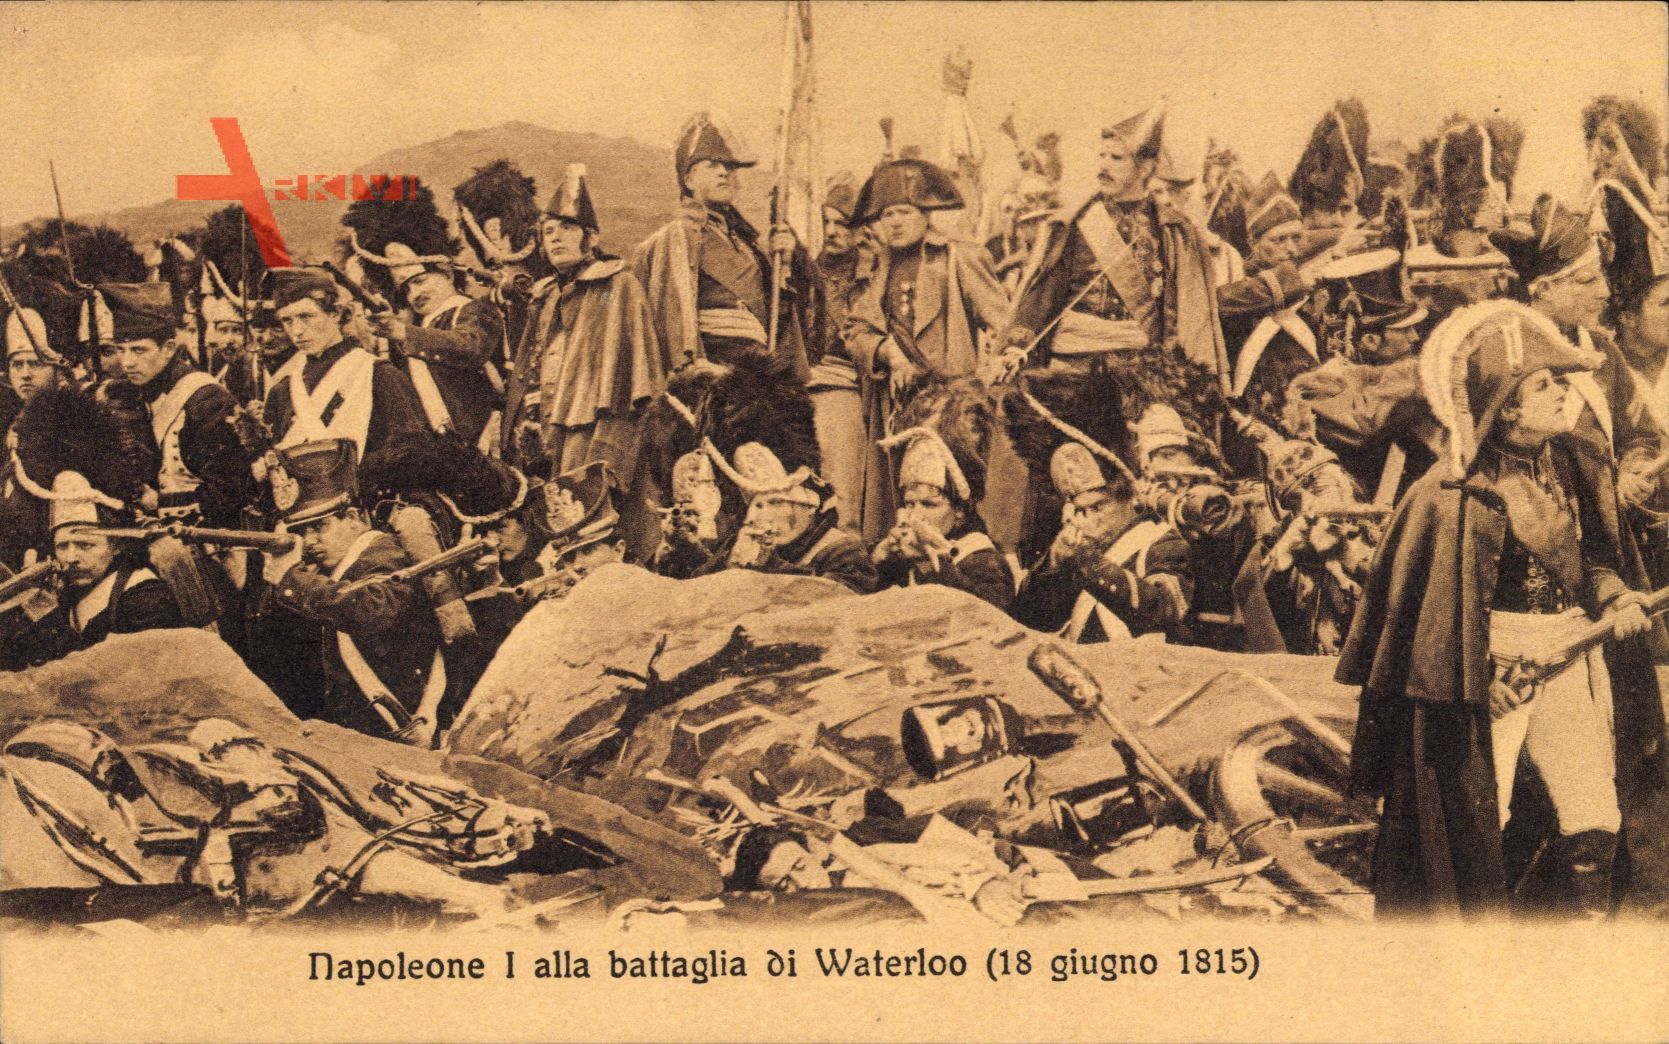 Napoleone I alla battaglia di Waterloo, 18 giugno 1815